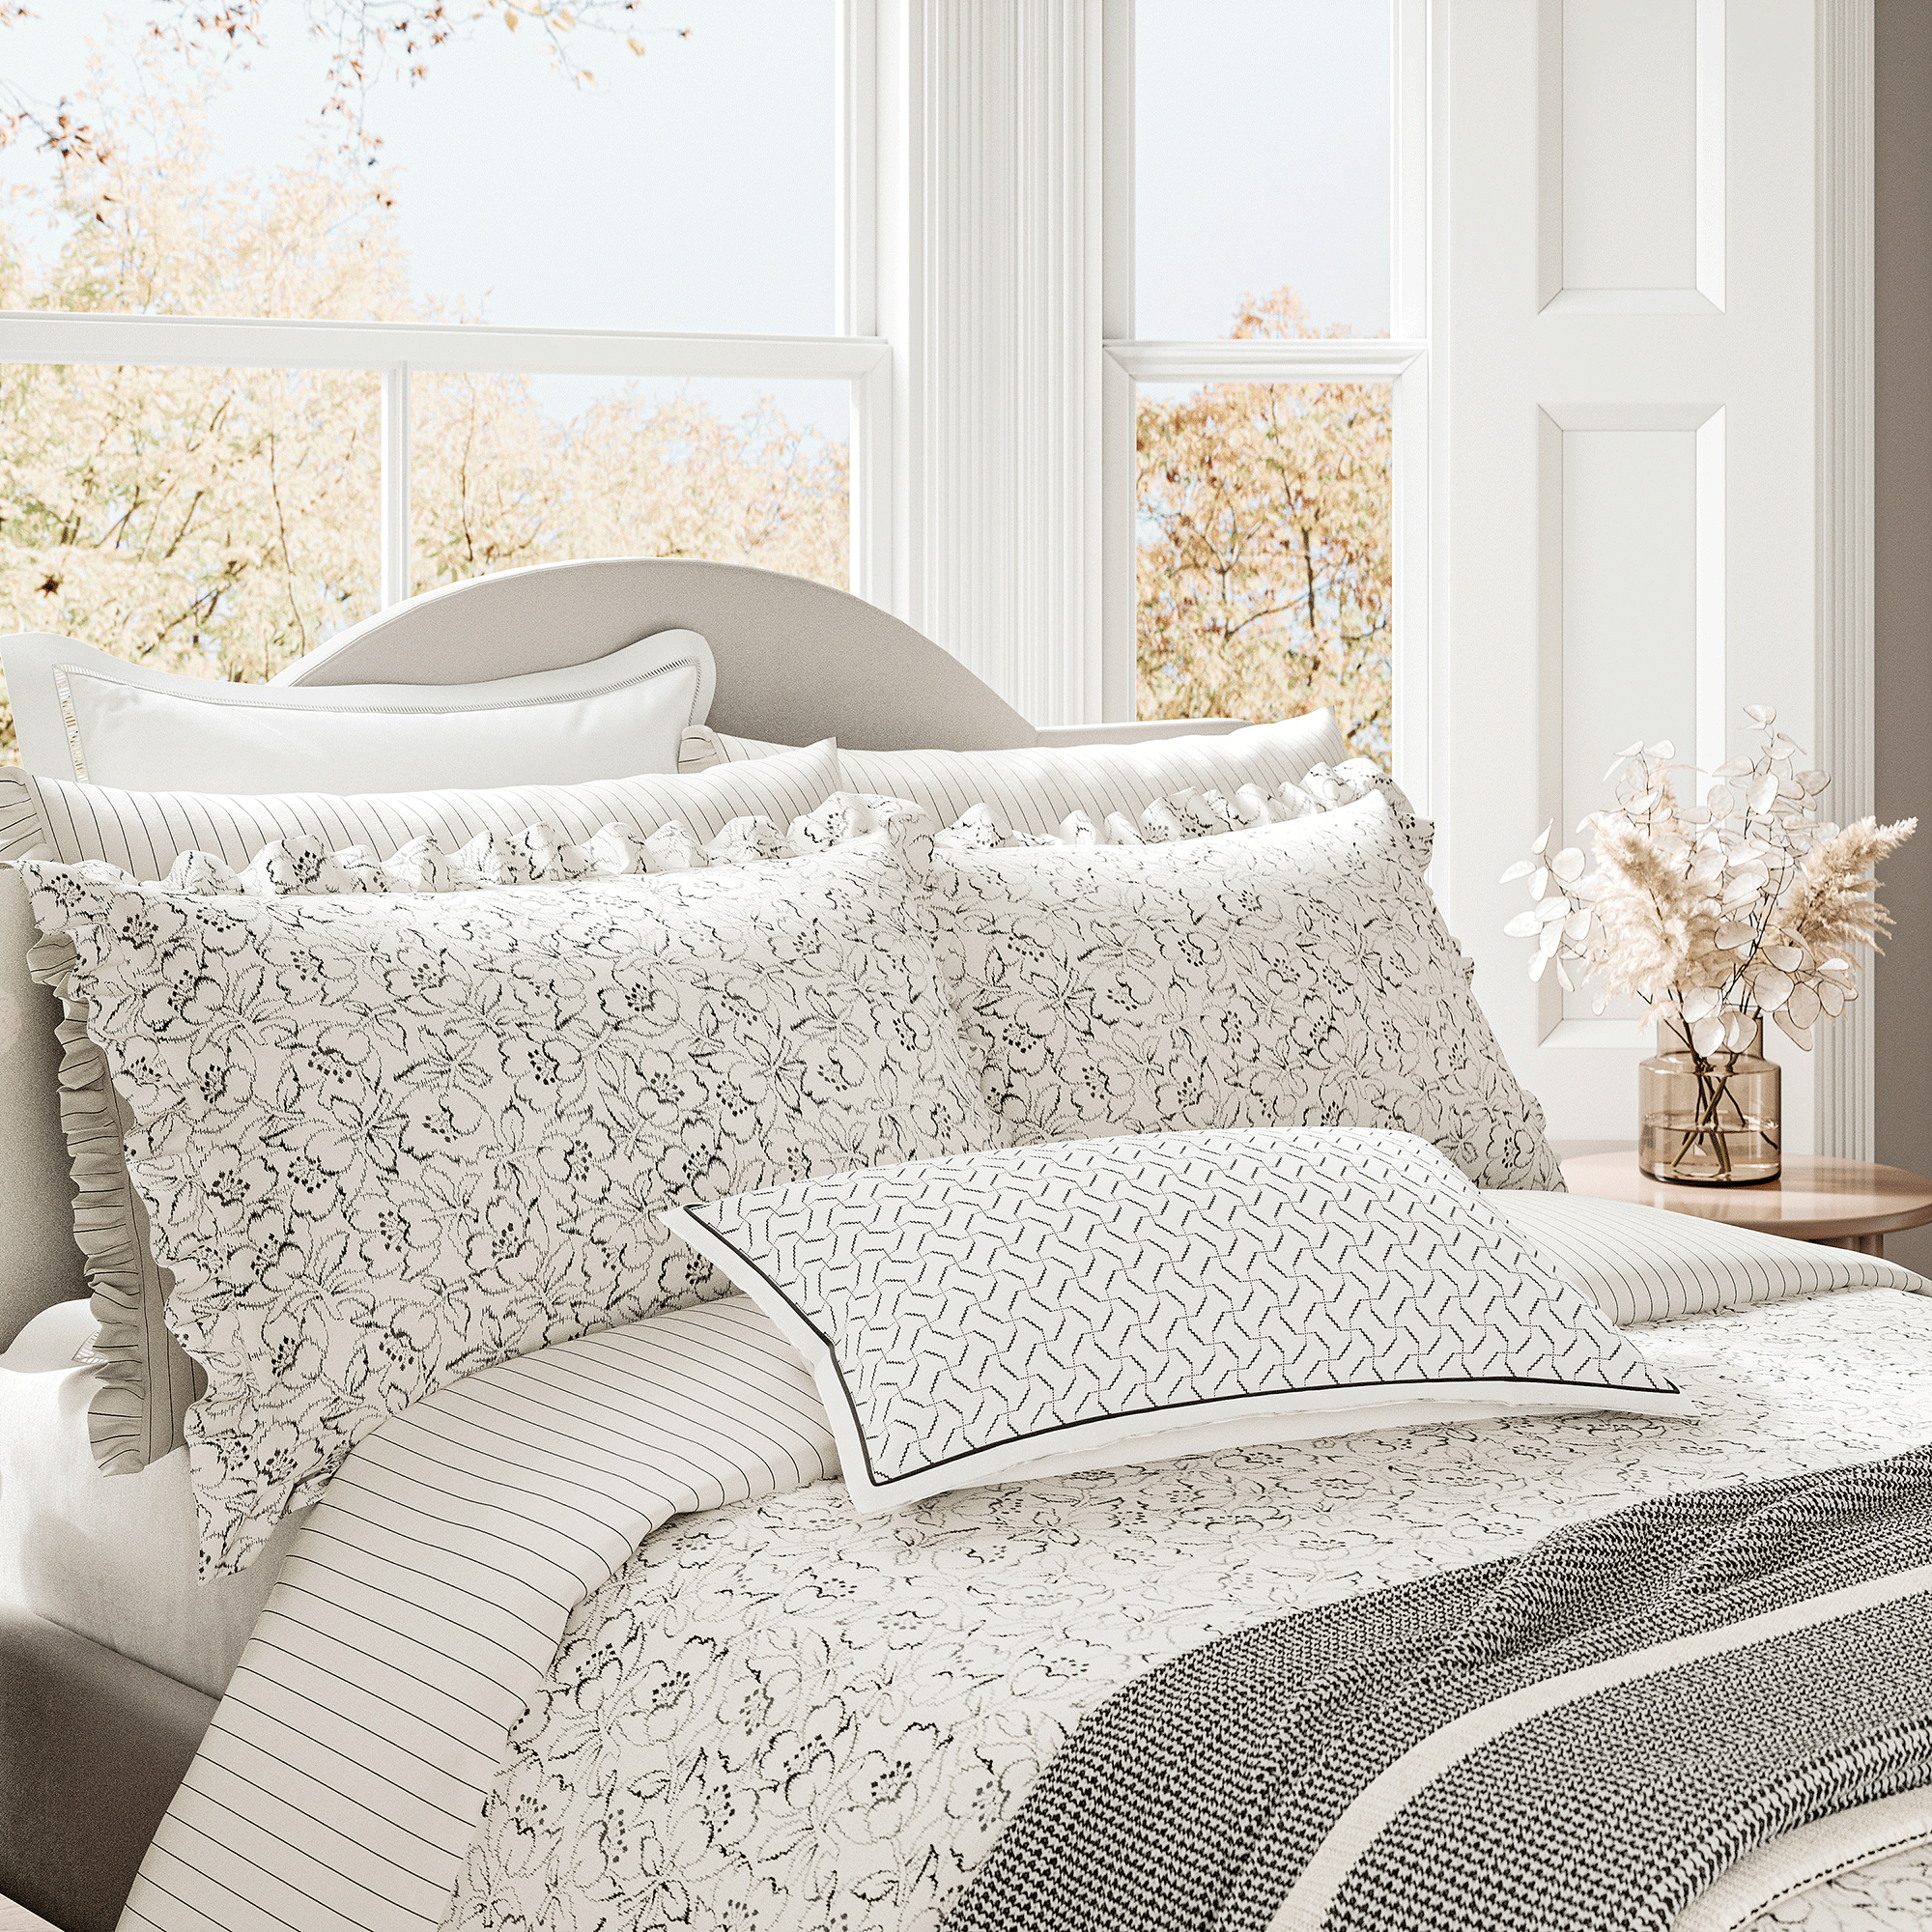 Black line floral white bedding on bed